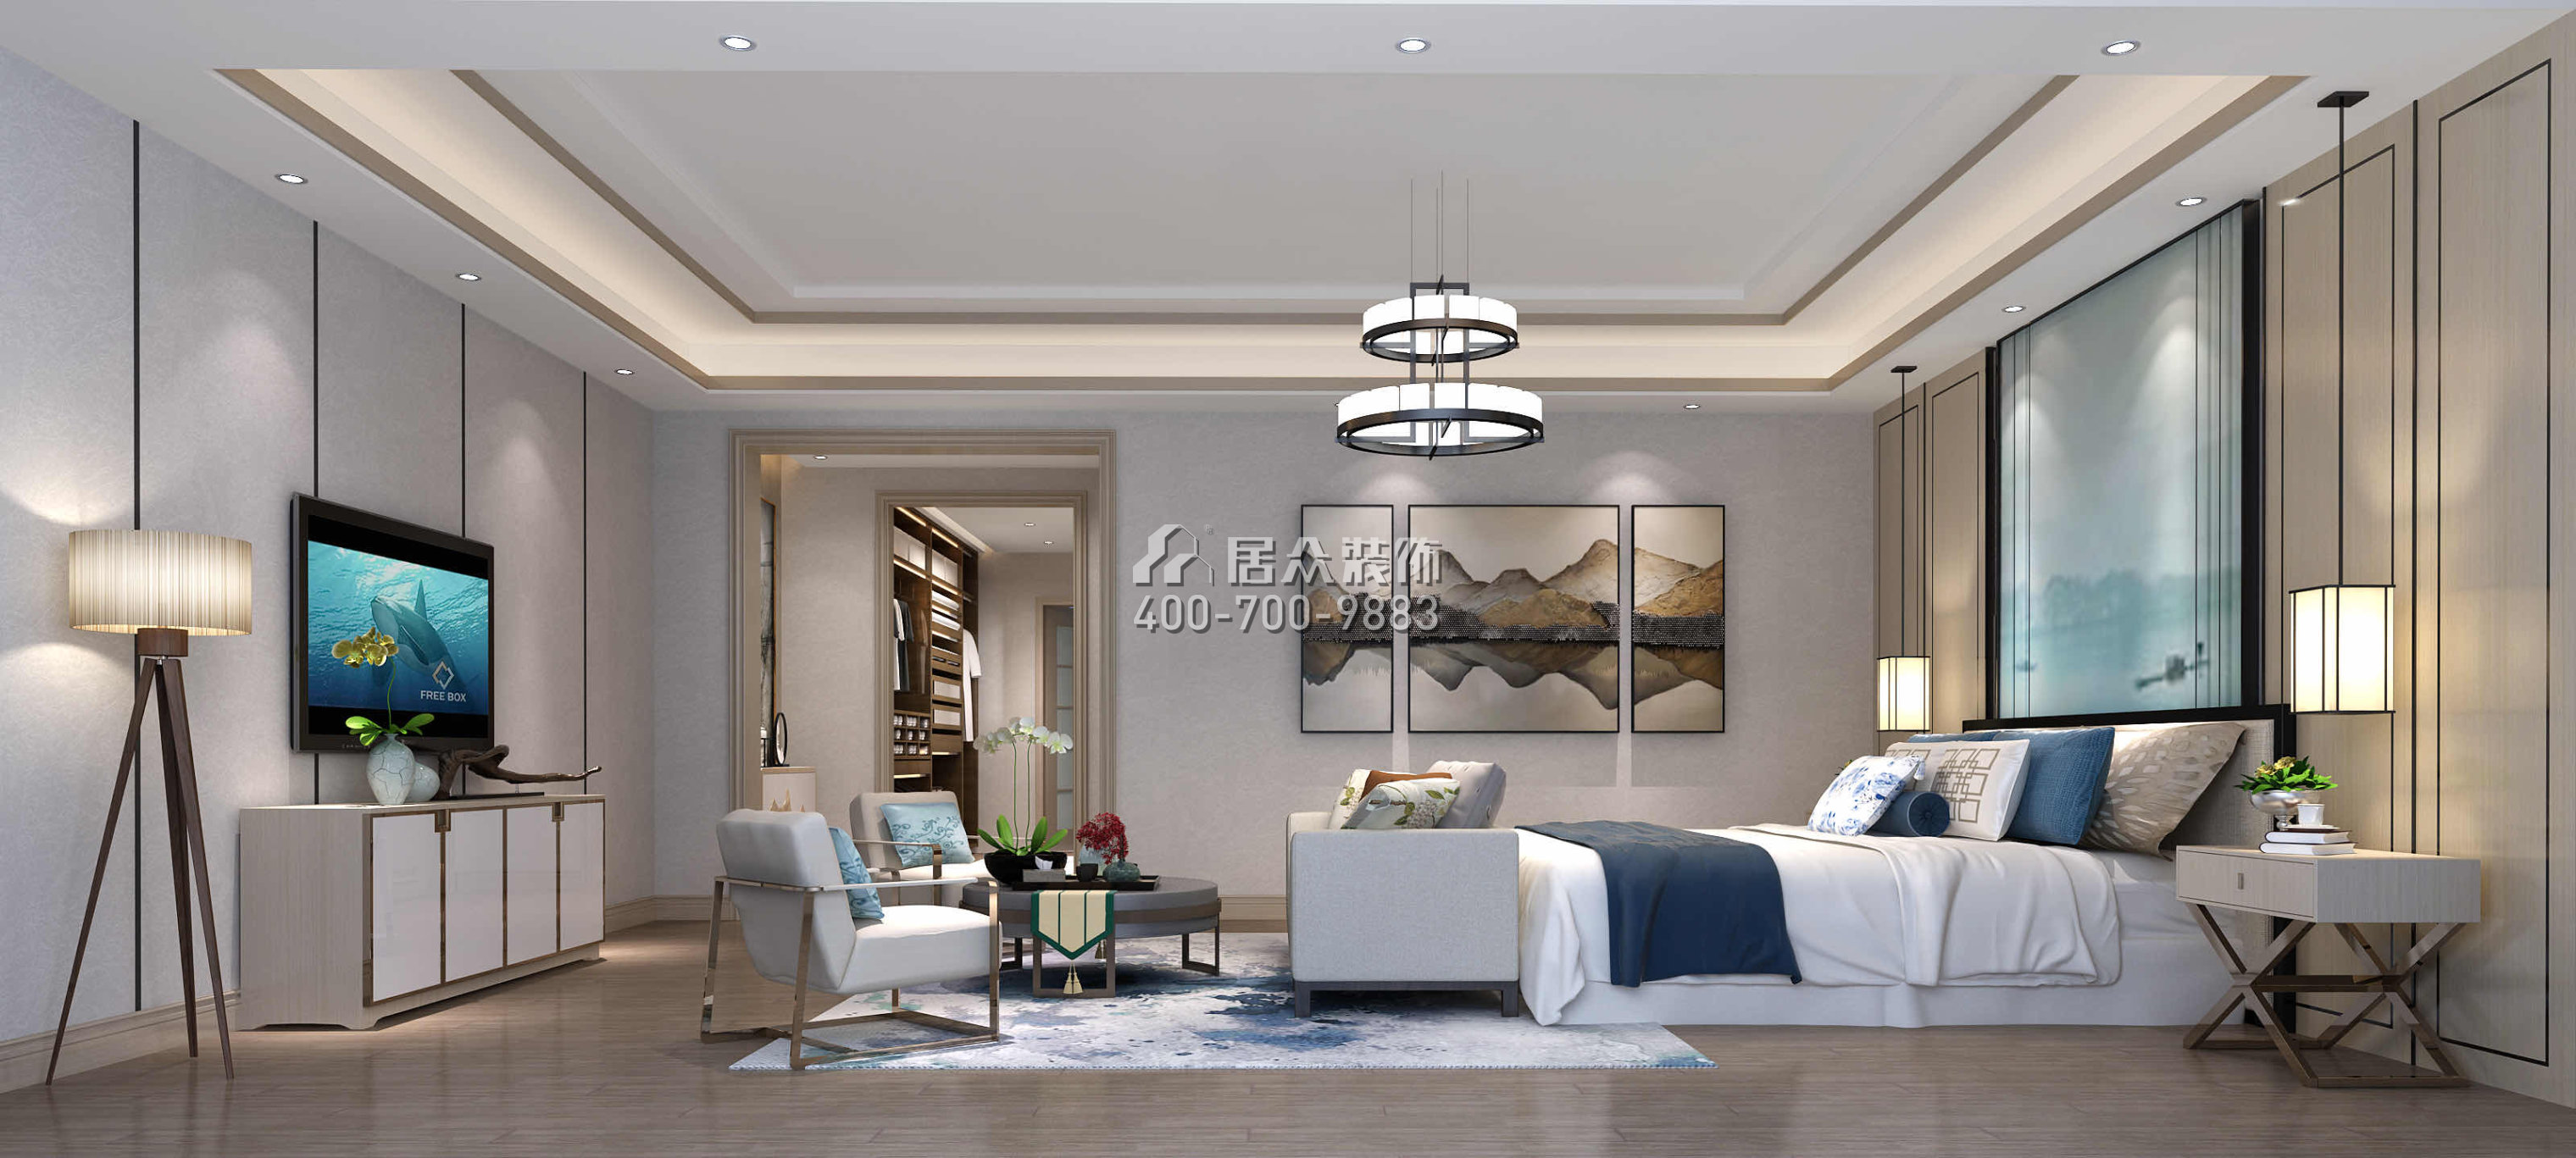 万科棠樾450平方米中式风格别墅户型卧室装修效果图